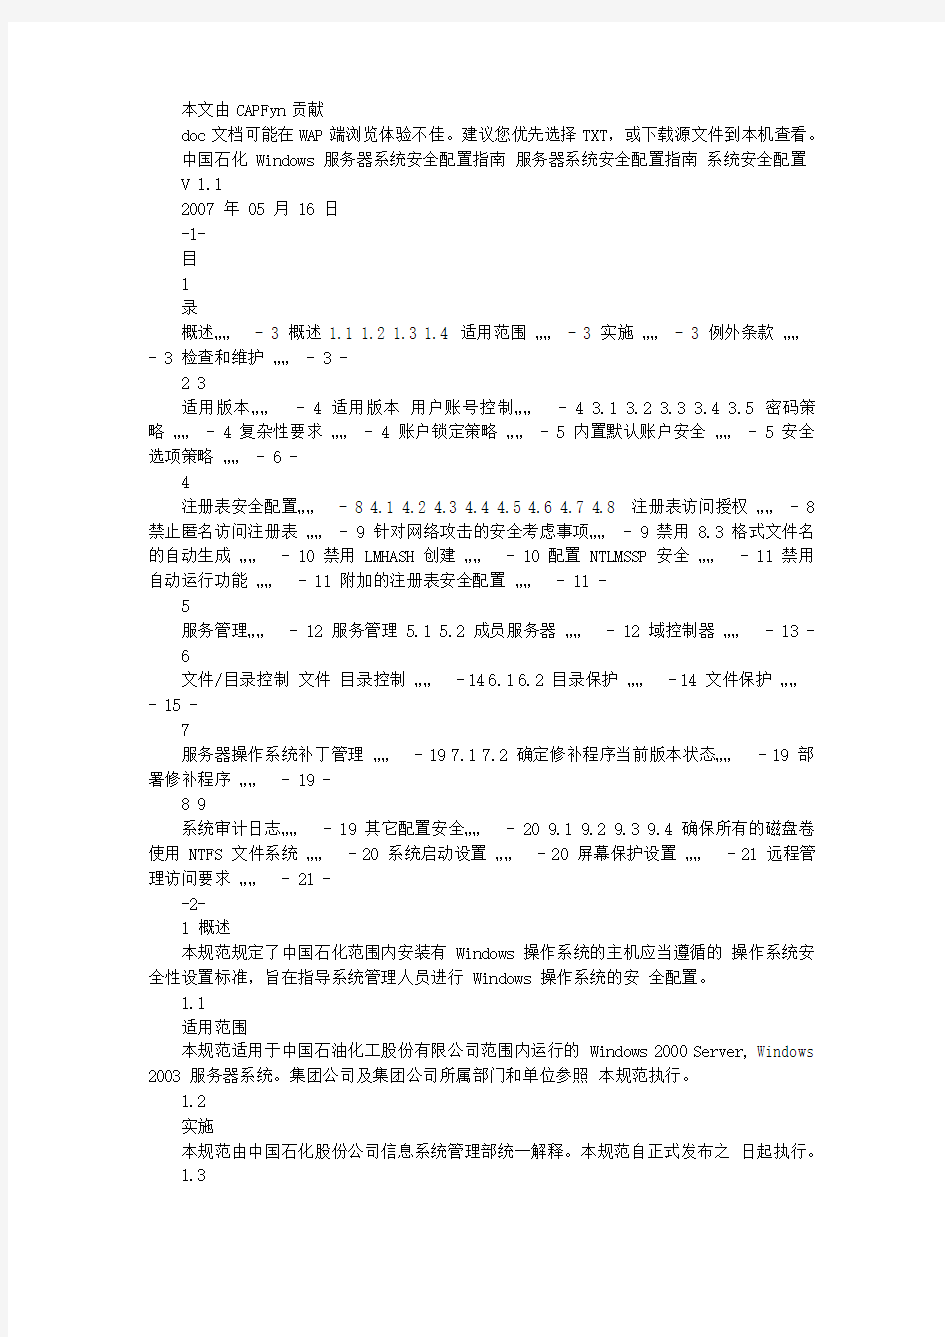 4《中国石化windows服务器系统安全配置指南》(信系[2007]18号)